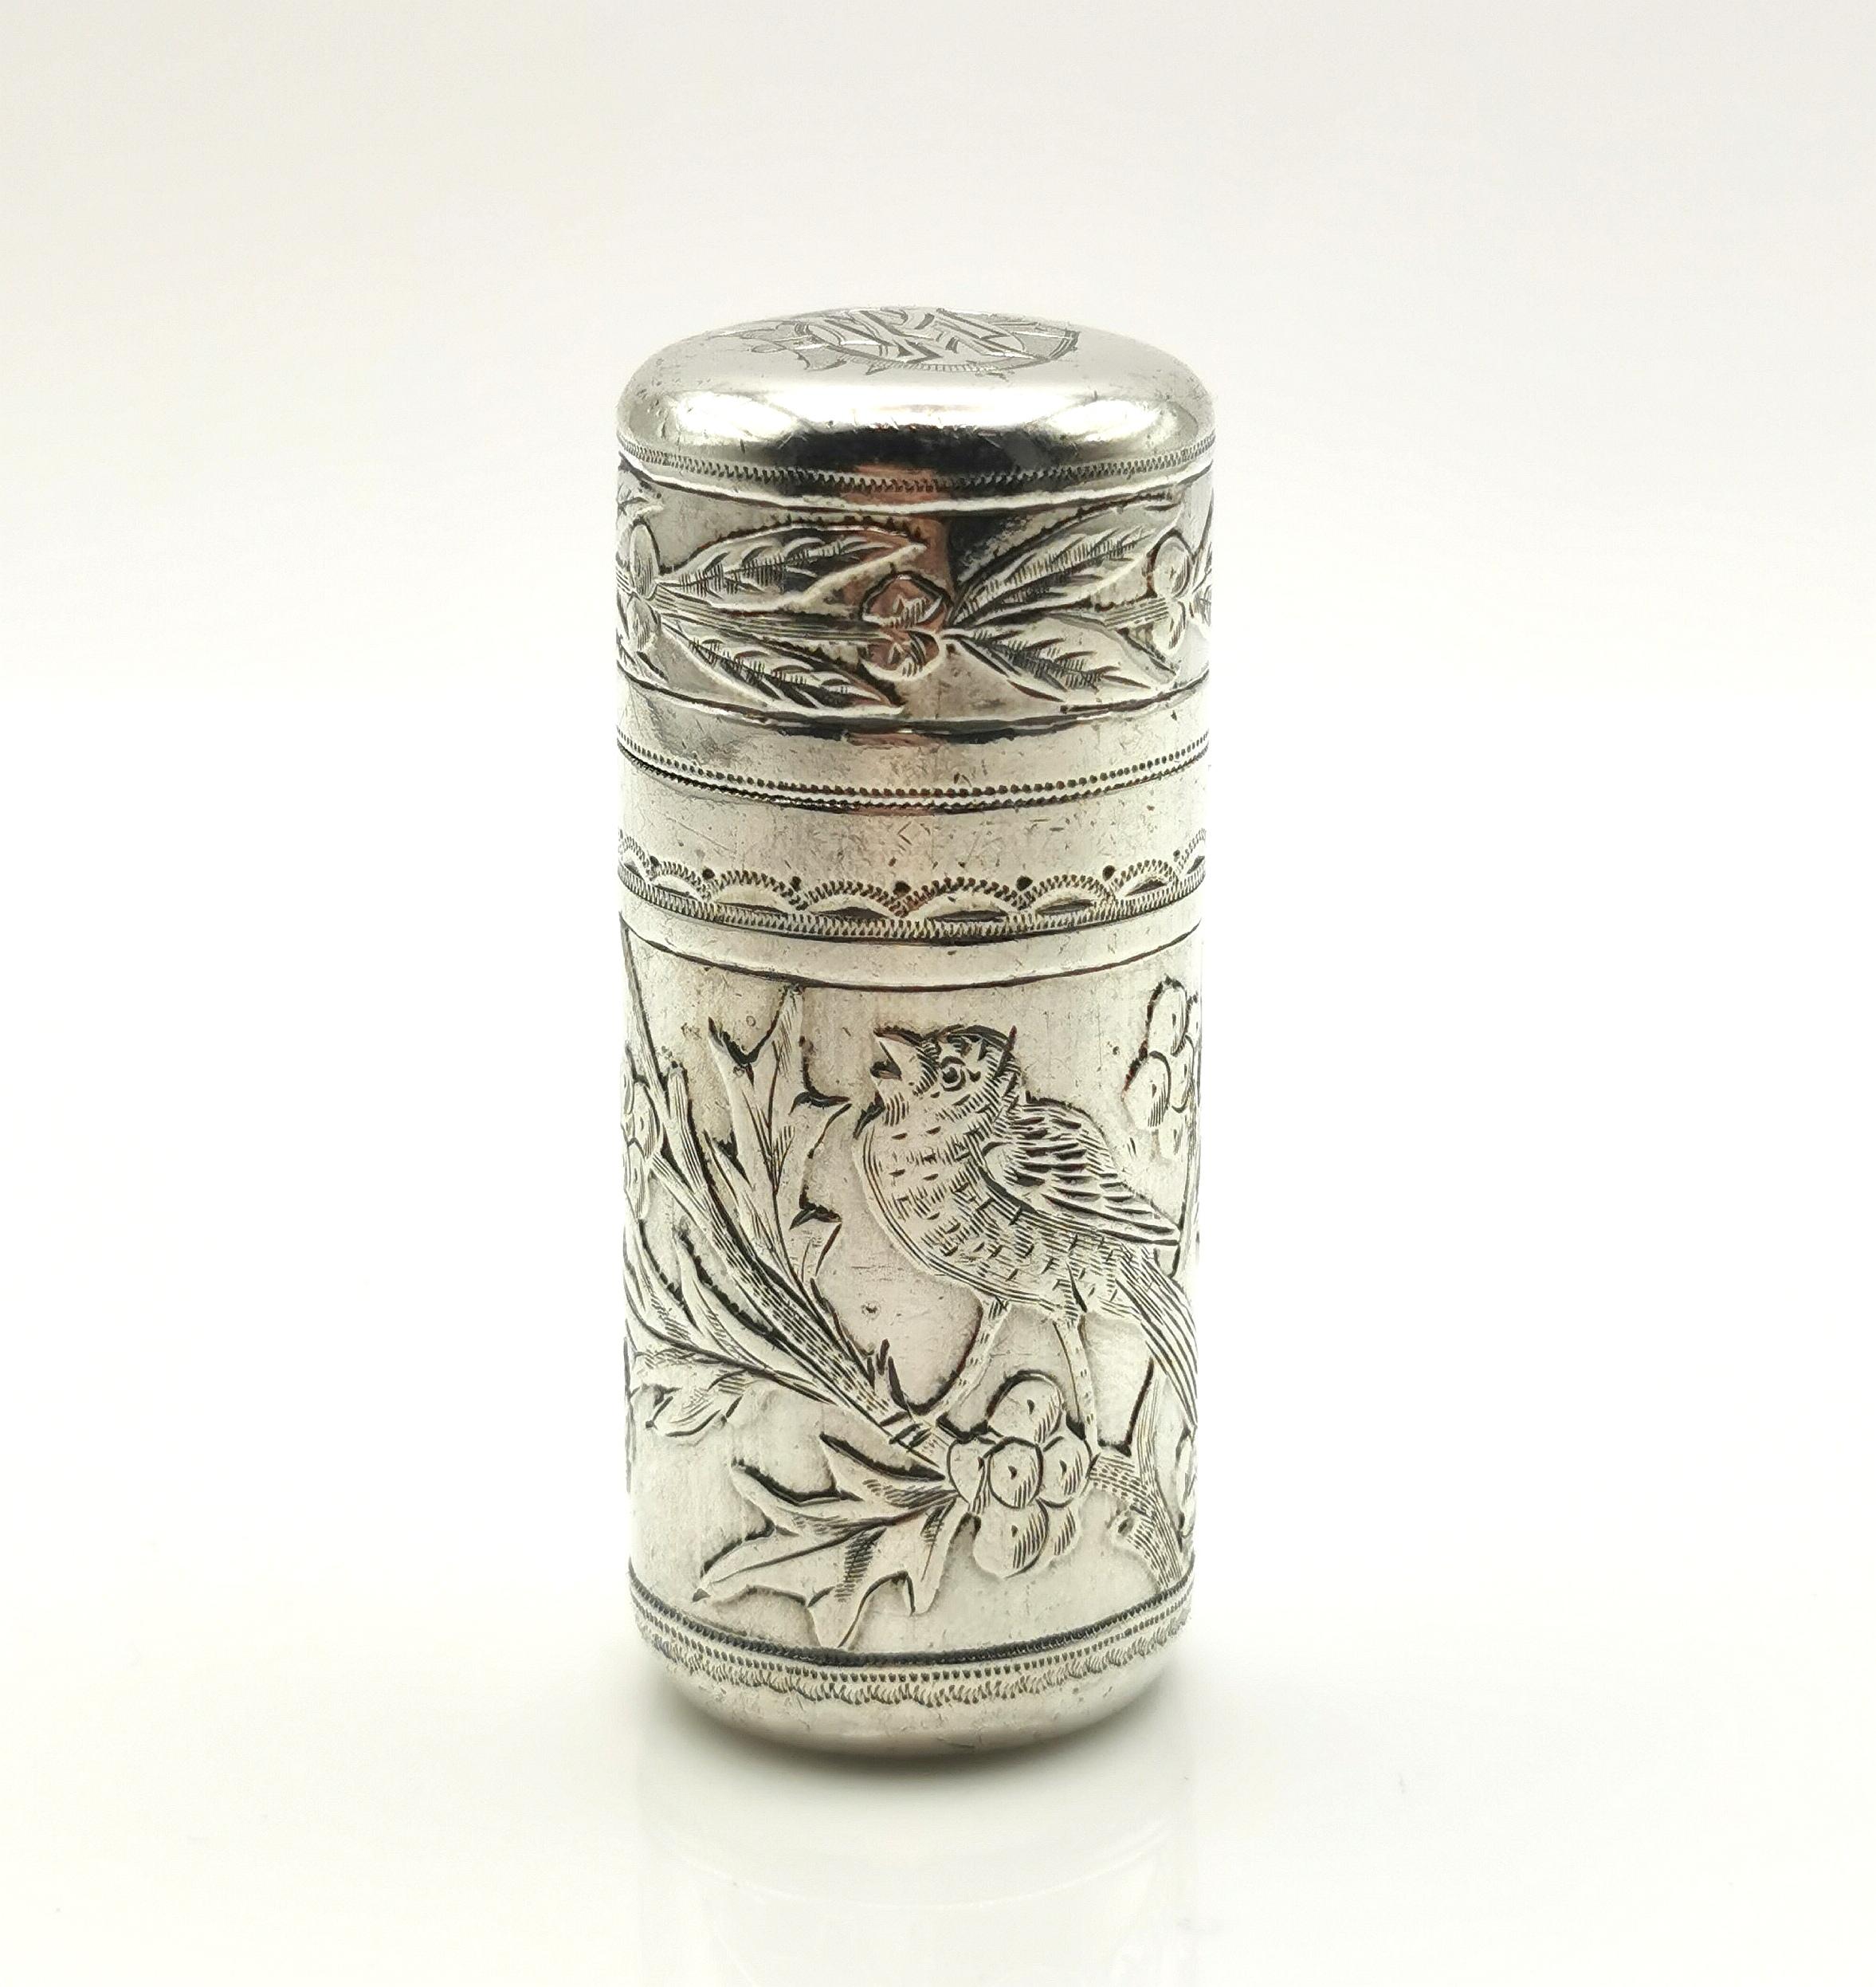 Un magnifique flacon de parfum en argent sterling ancien.

Il s'agit d'un flacon de parfum cylindrique en argent sterling avec une doublure et un bouchon en verre.

Il présente la plus belle gravure d'oiseaux et de Monogramme avec quelques détails